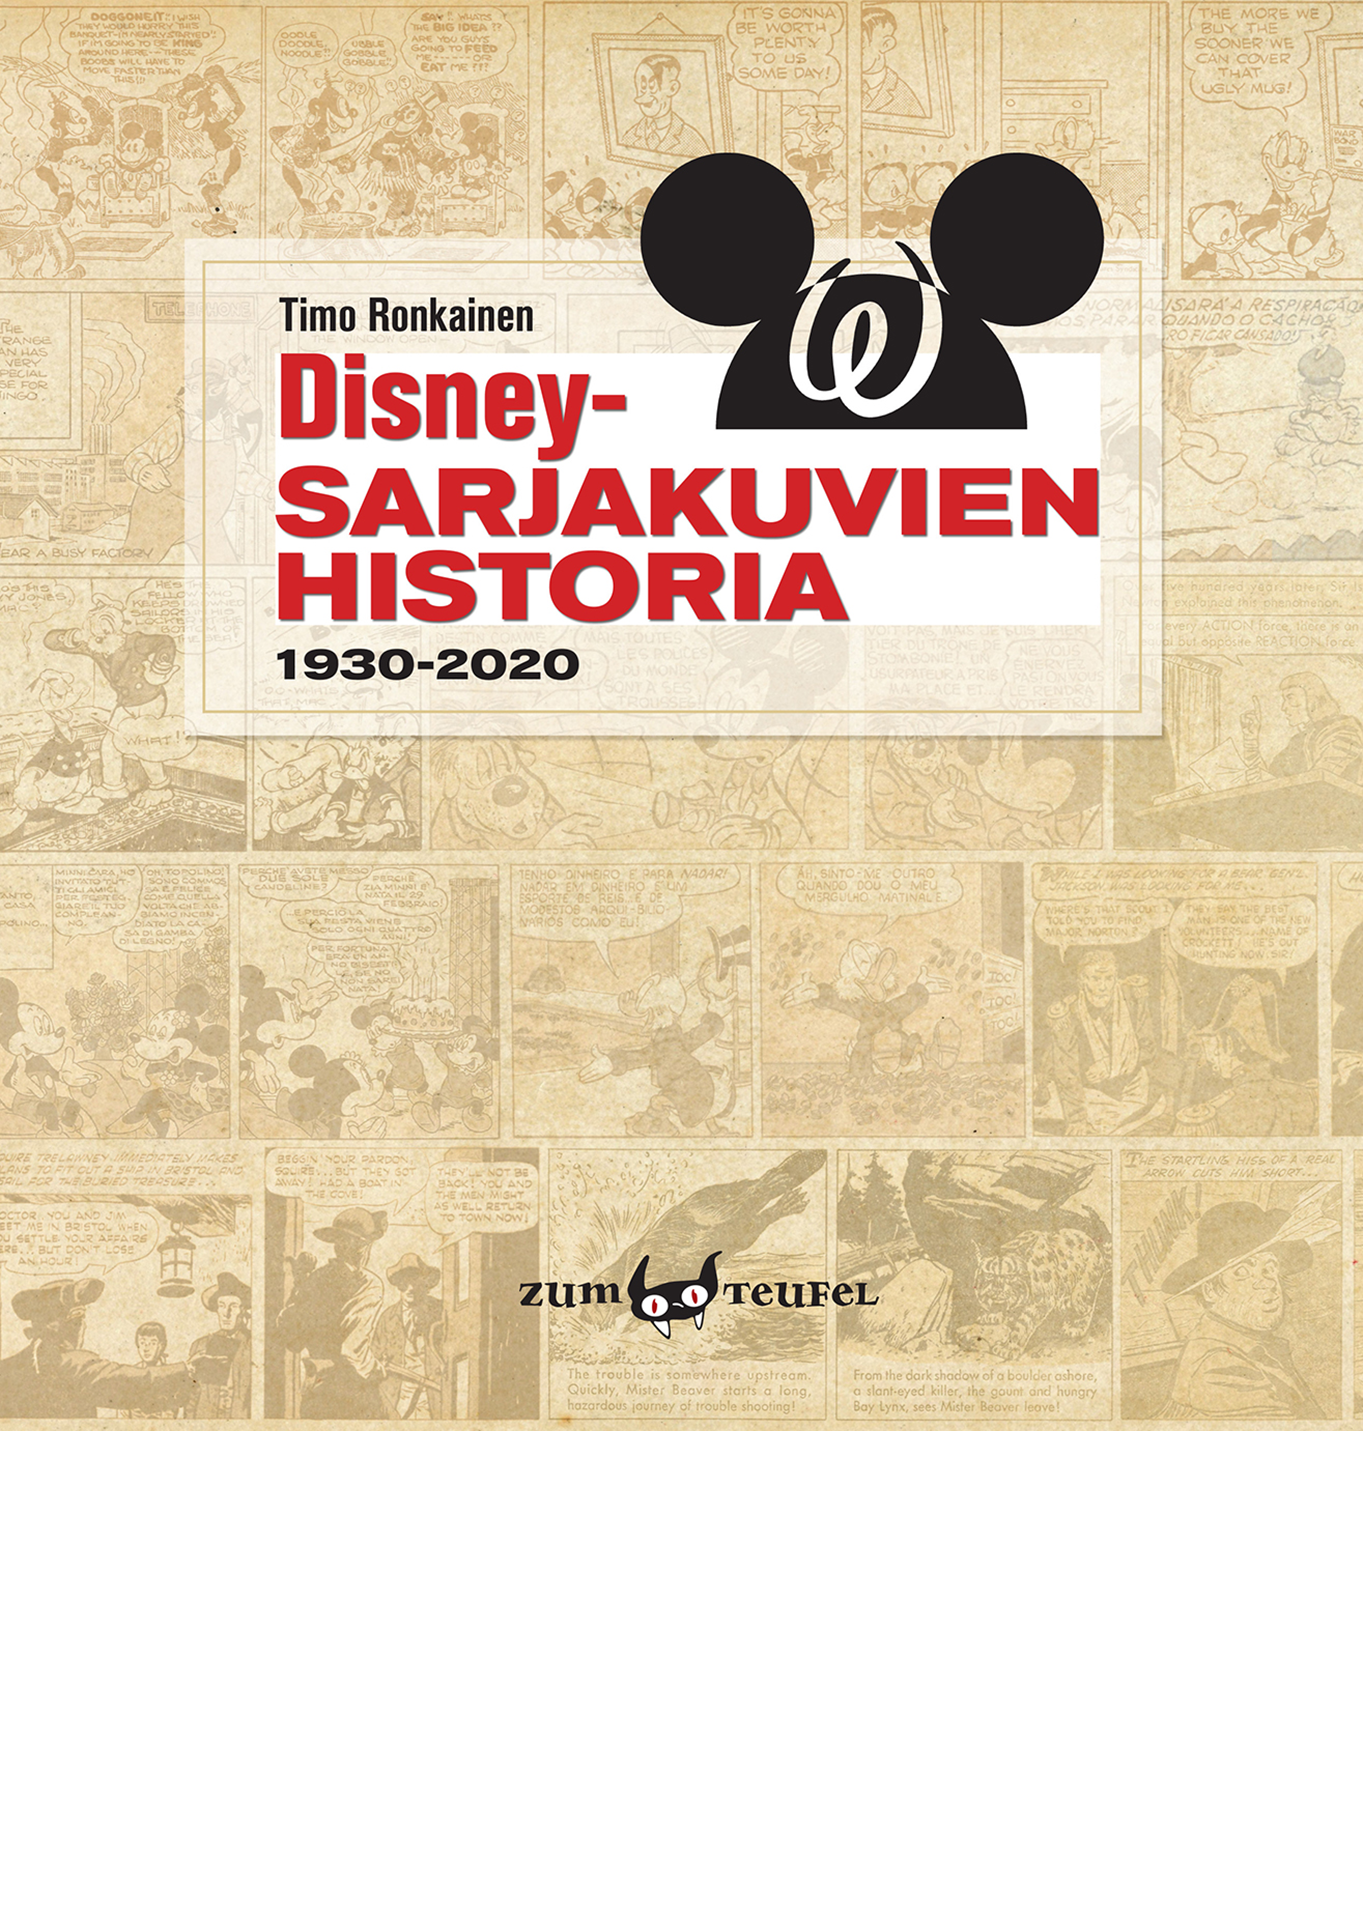 Disney-sarjakuvien historia - kansikuva